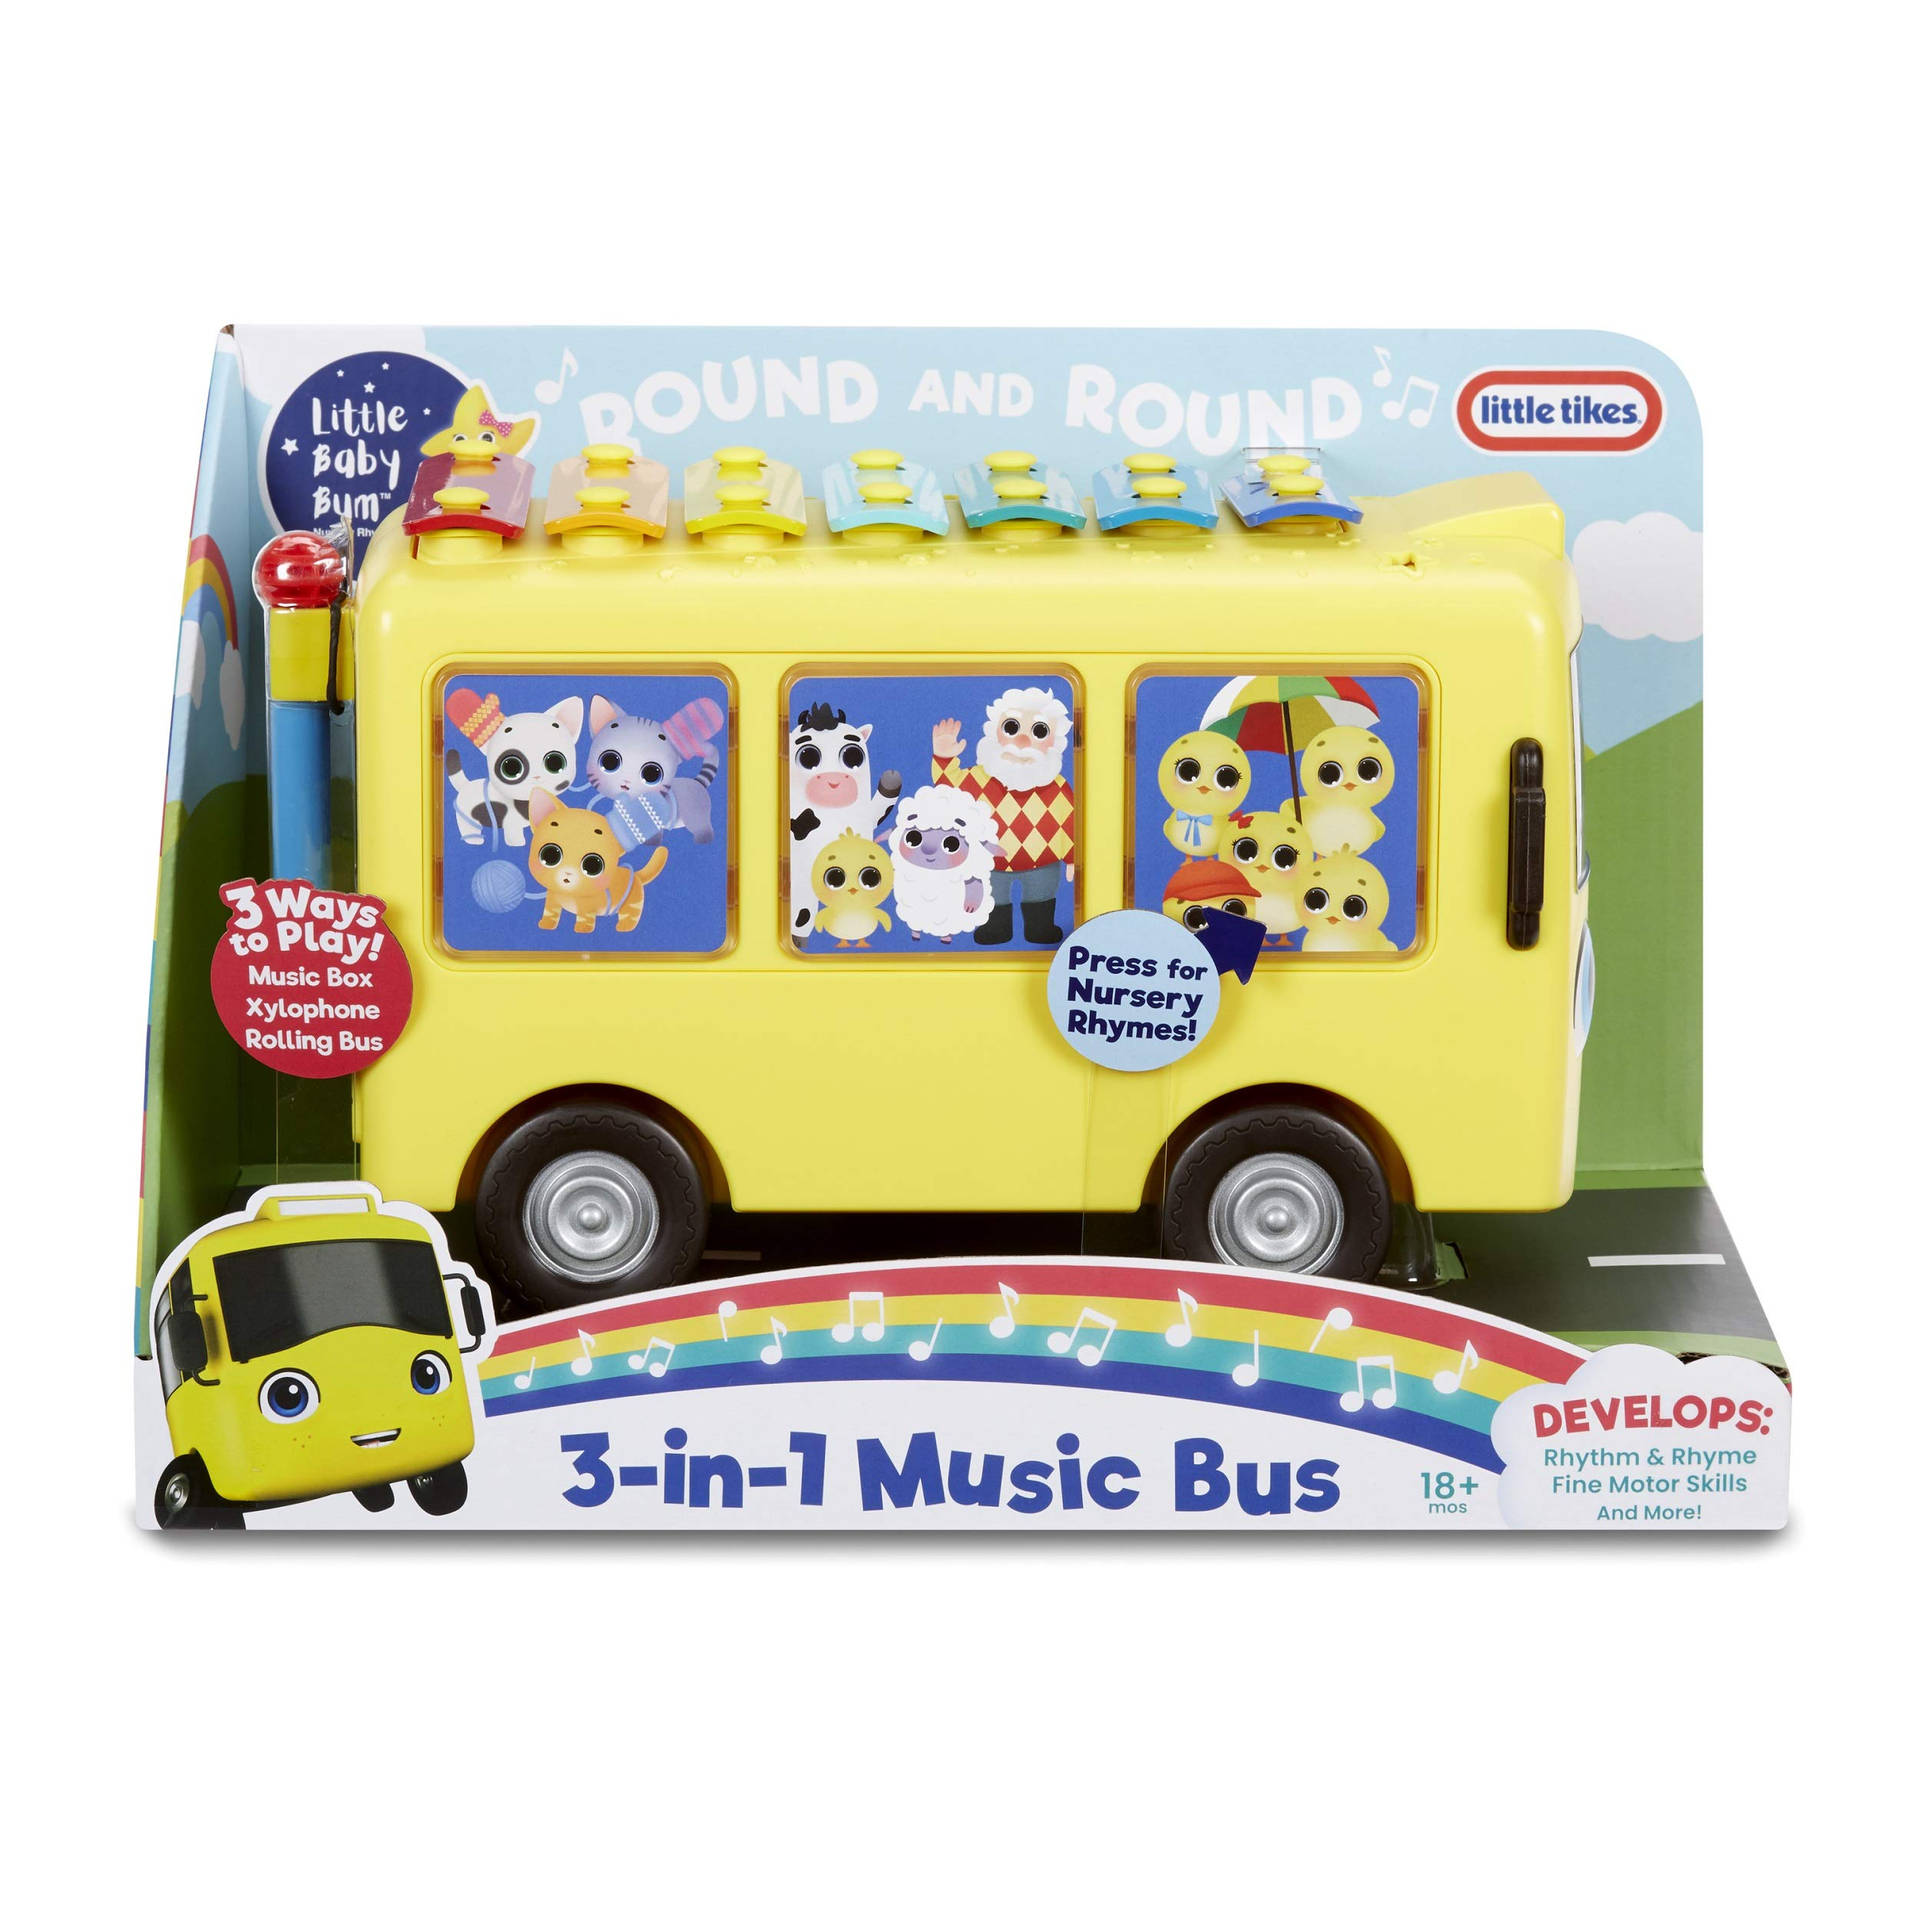 Little Baby Bum Music Bus Wallpaper